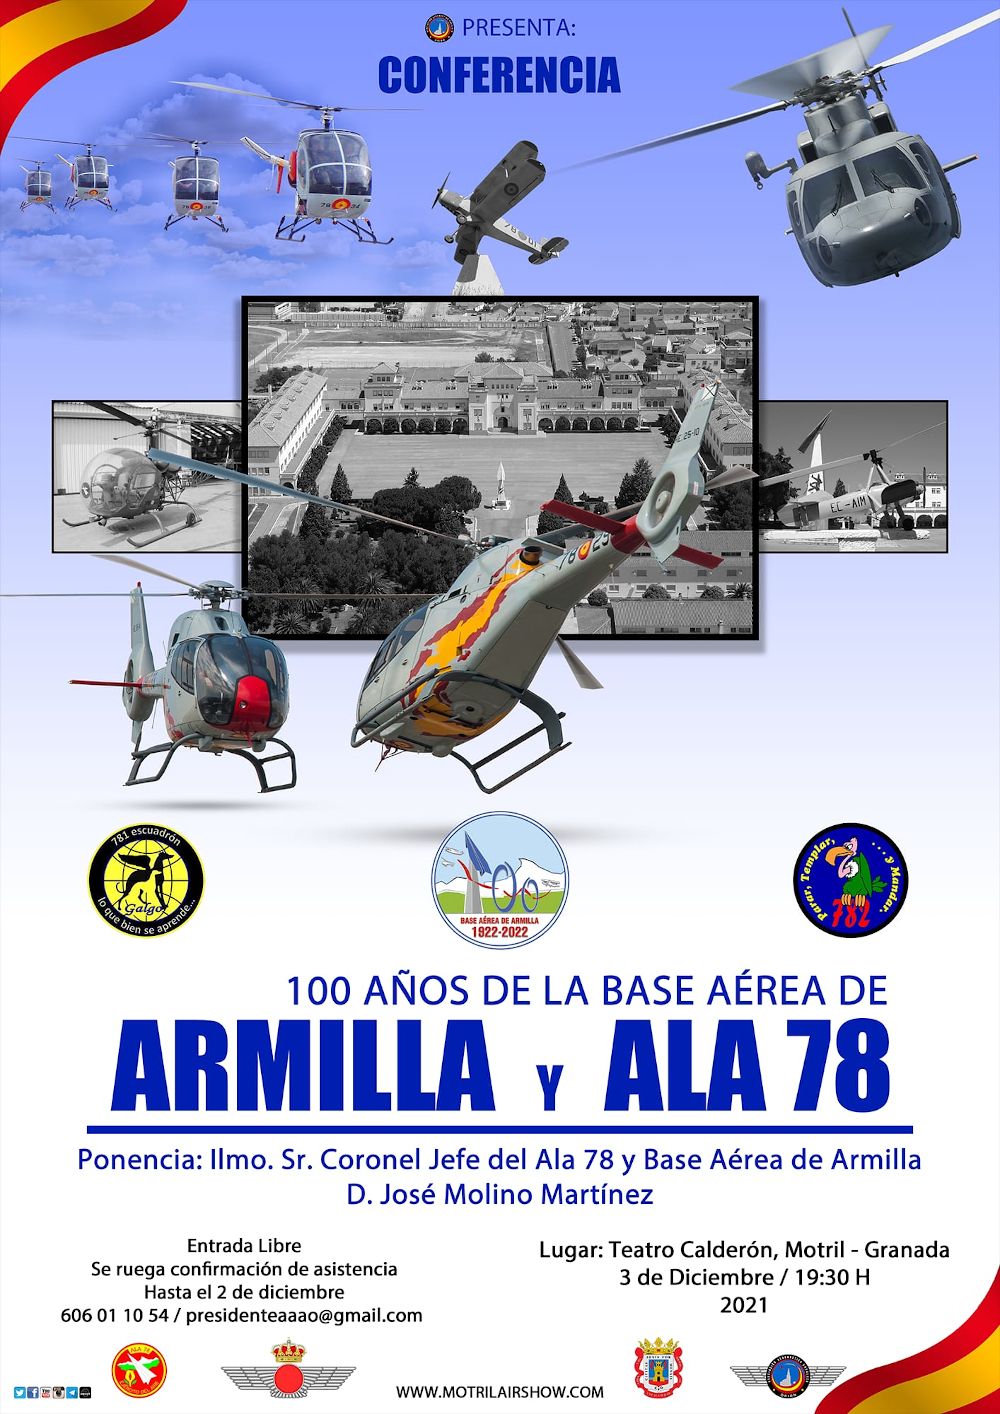 Motril homenajea el centenario de la Base Aérea de Armilla y ALA 78 con una importante conferencia histórica